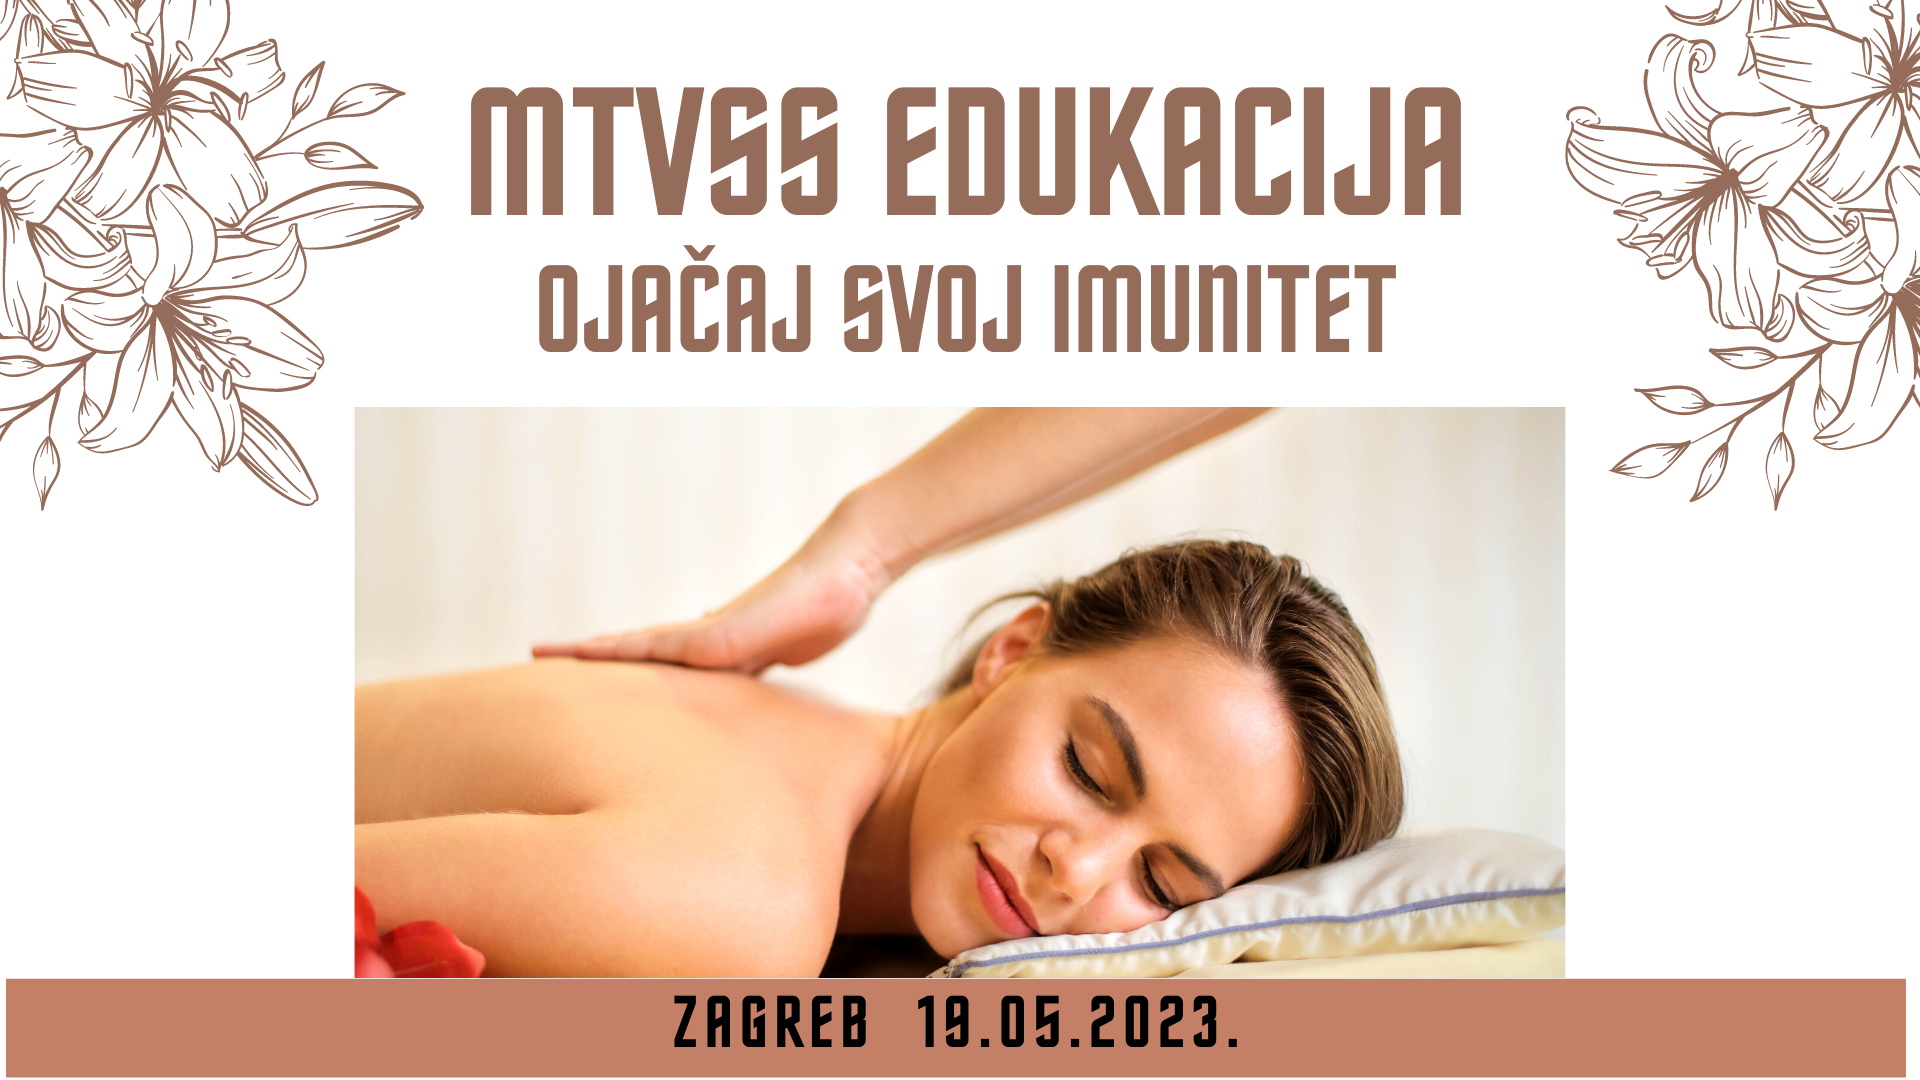 Mtvss - ojačaj svoj IMUNITET, Zagreb 19.05.2023.